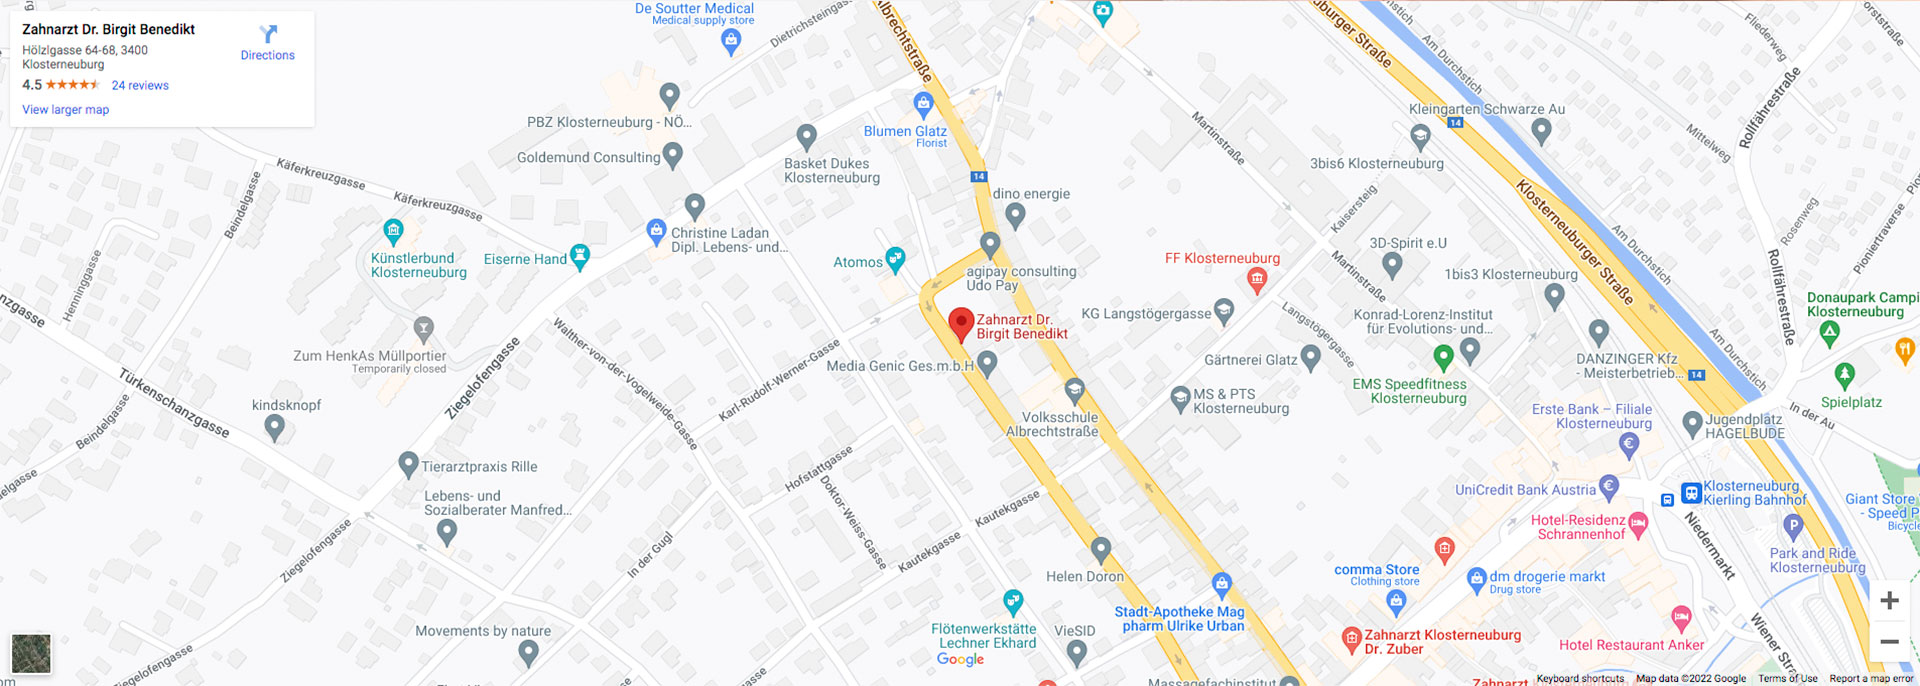 Google Maps Benedikt